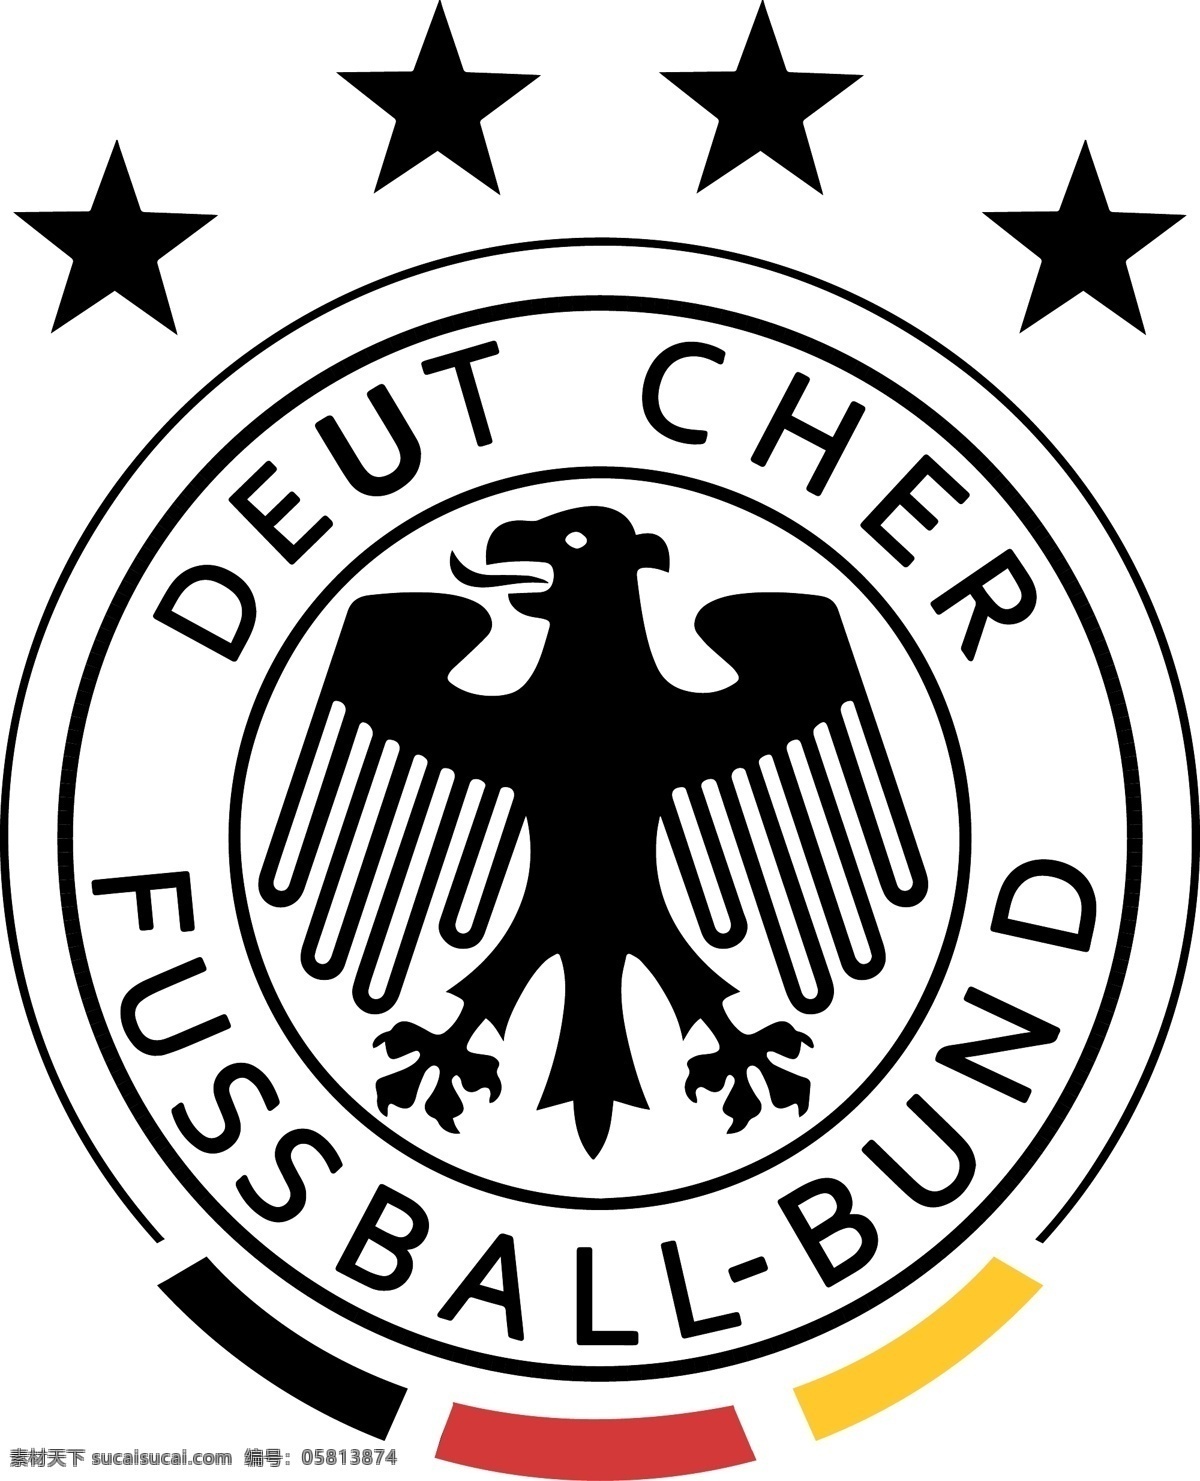 德国队 标志 四星 德国 国家队标志 德国队徽 德国队标志 足球 运动 足球标志 欧洲 世界杯 logo设计